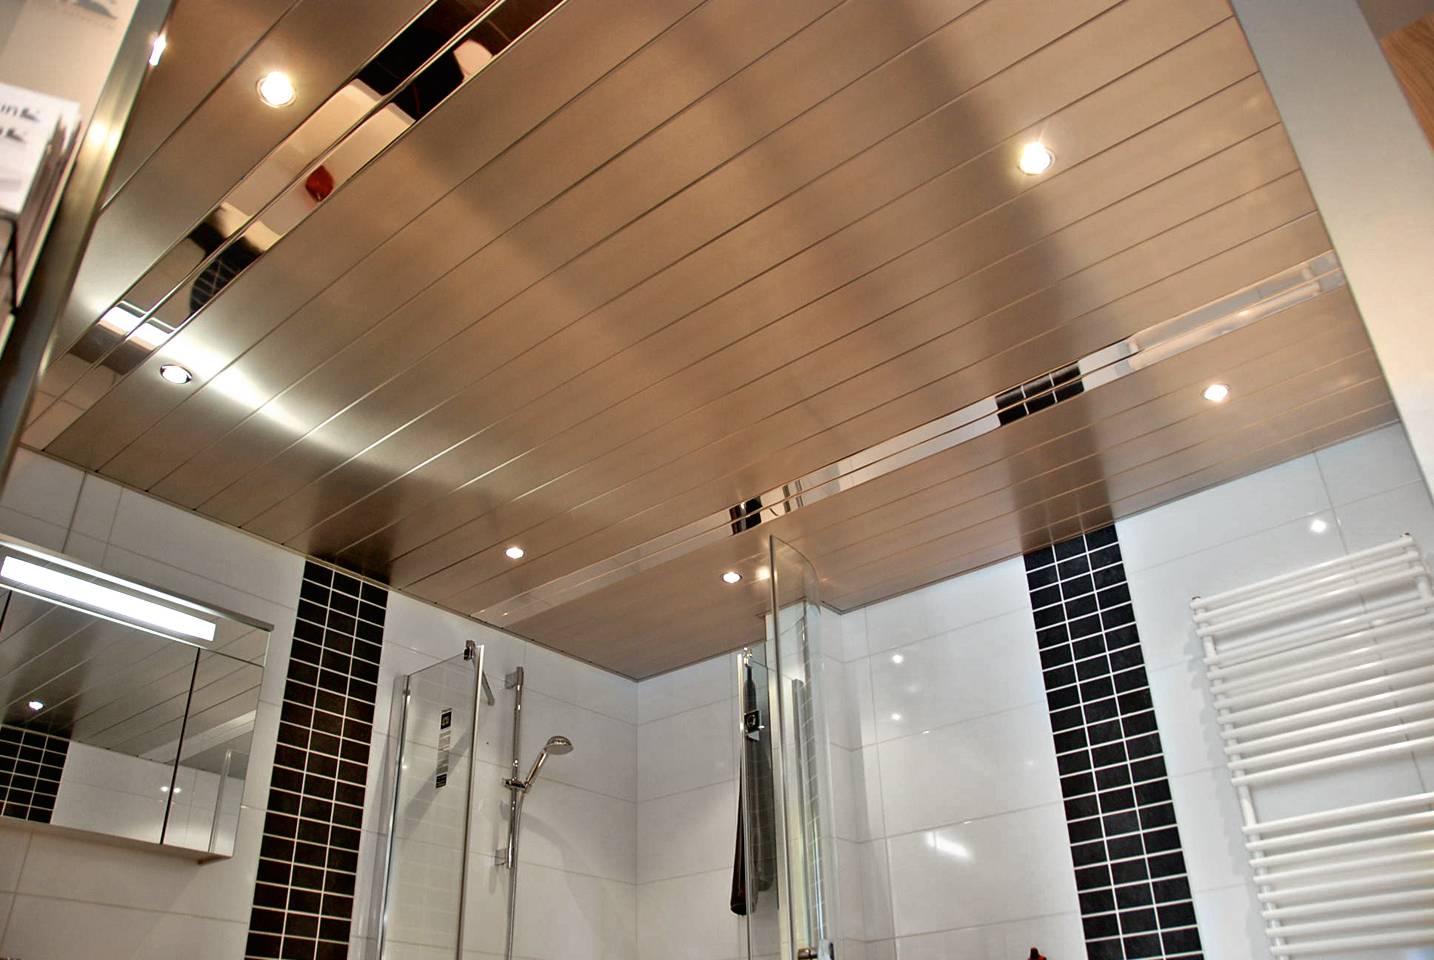 Потолок в ванной комнате: отделка, выбор материала и идеи дизайна (45 фото) | дизайн и интерьер ванной комнаты